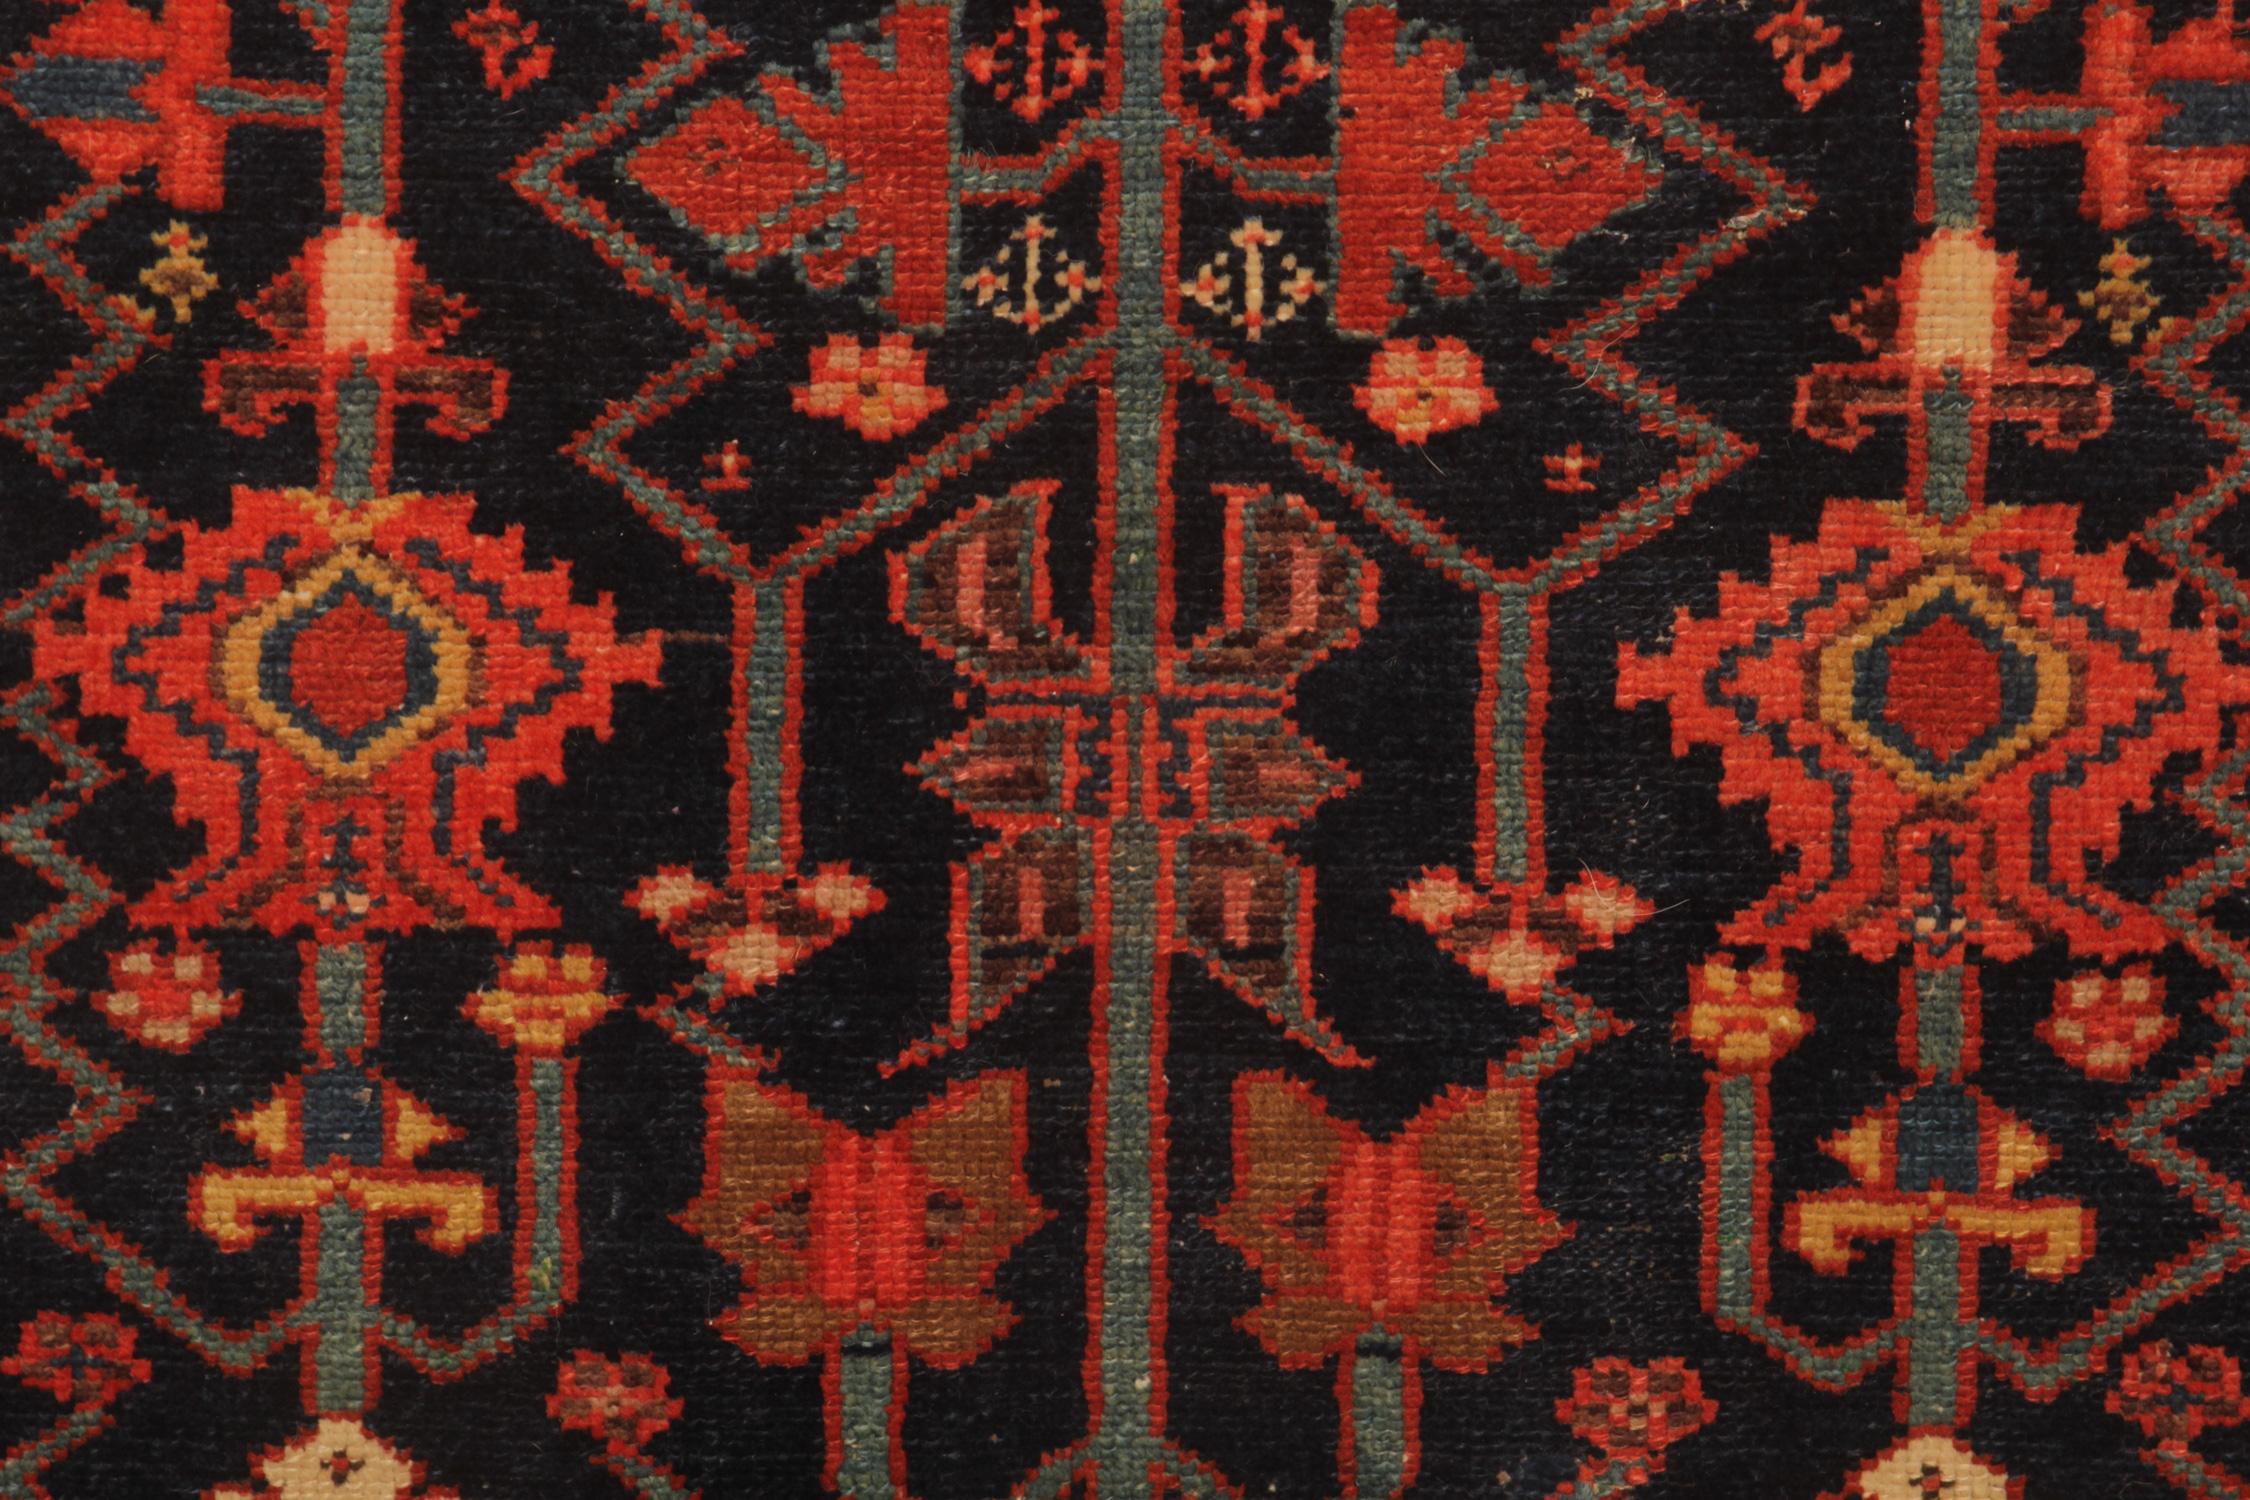 Hand-Crafted Rare Antique Rug Caucasian Oriental Rug Handmade Carpet Kazak Area Rug for Sale